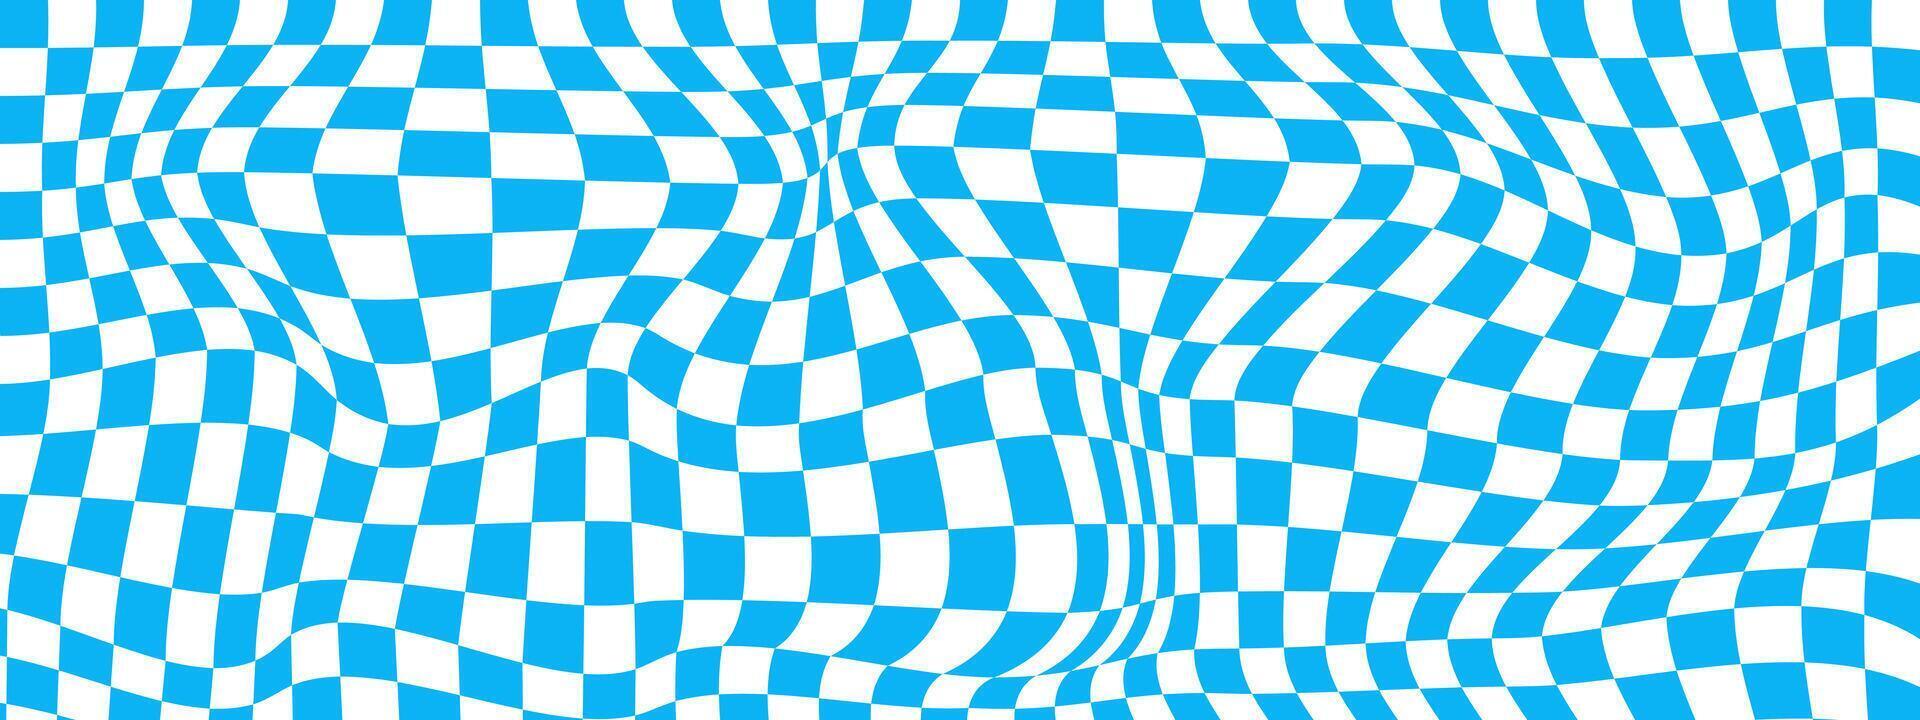 psychedelisch Muster mit verzogen Blau und Weiß Quadrate. verzerrt Schach Tafel Hintergrund. kariert optisch Illusion Wirkung. trippy Schachbrett Textur. vektor